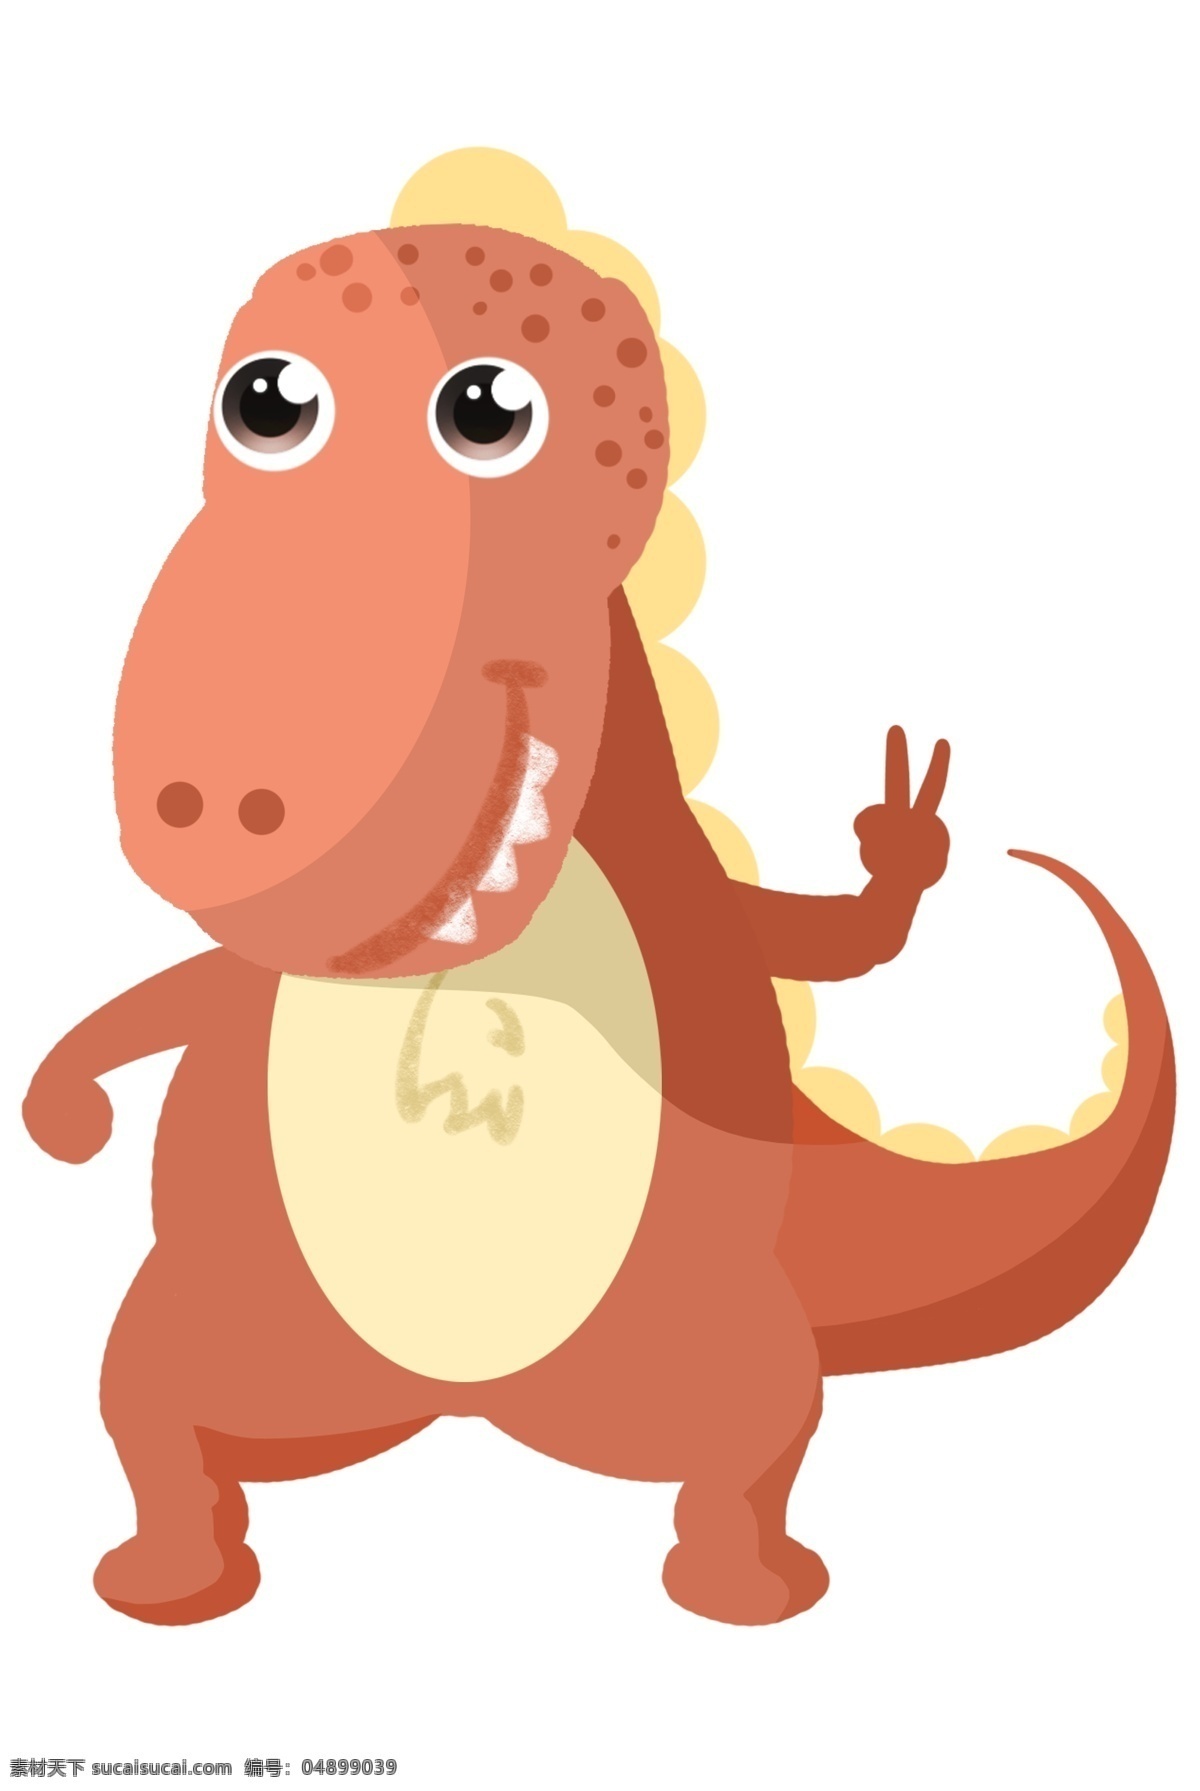 咖 色 恐龙 装饰 插画 咖色的恐龙 漂亮的恐龙 创意恐龙 立体恐龙 精美恐龙 照相的恐龙 恐龙插画